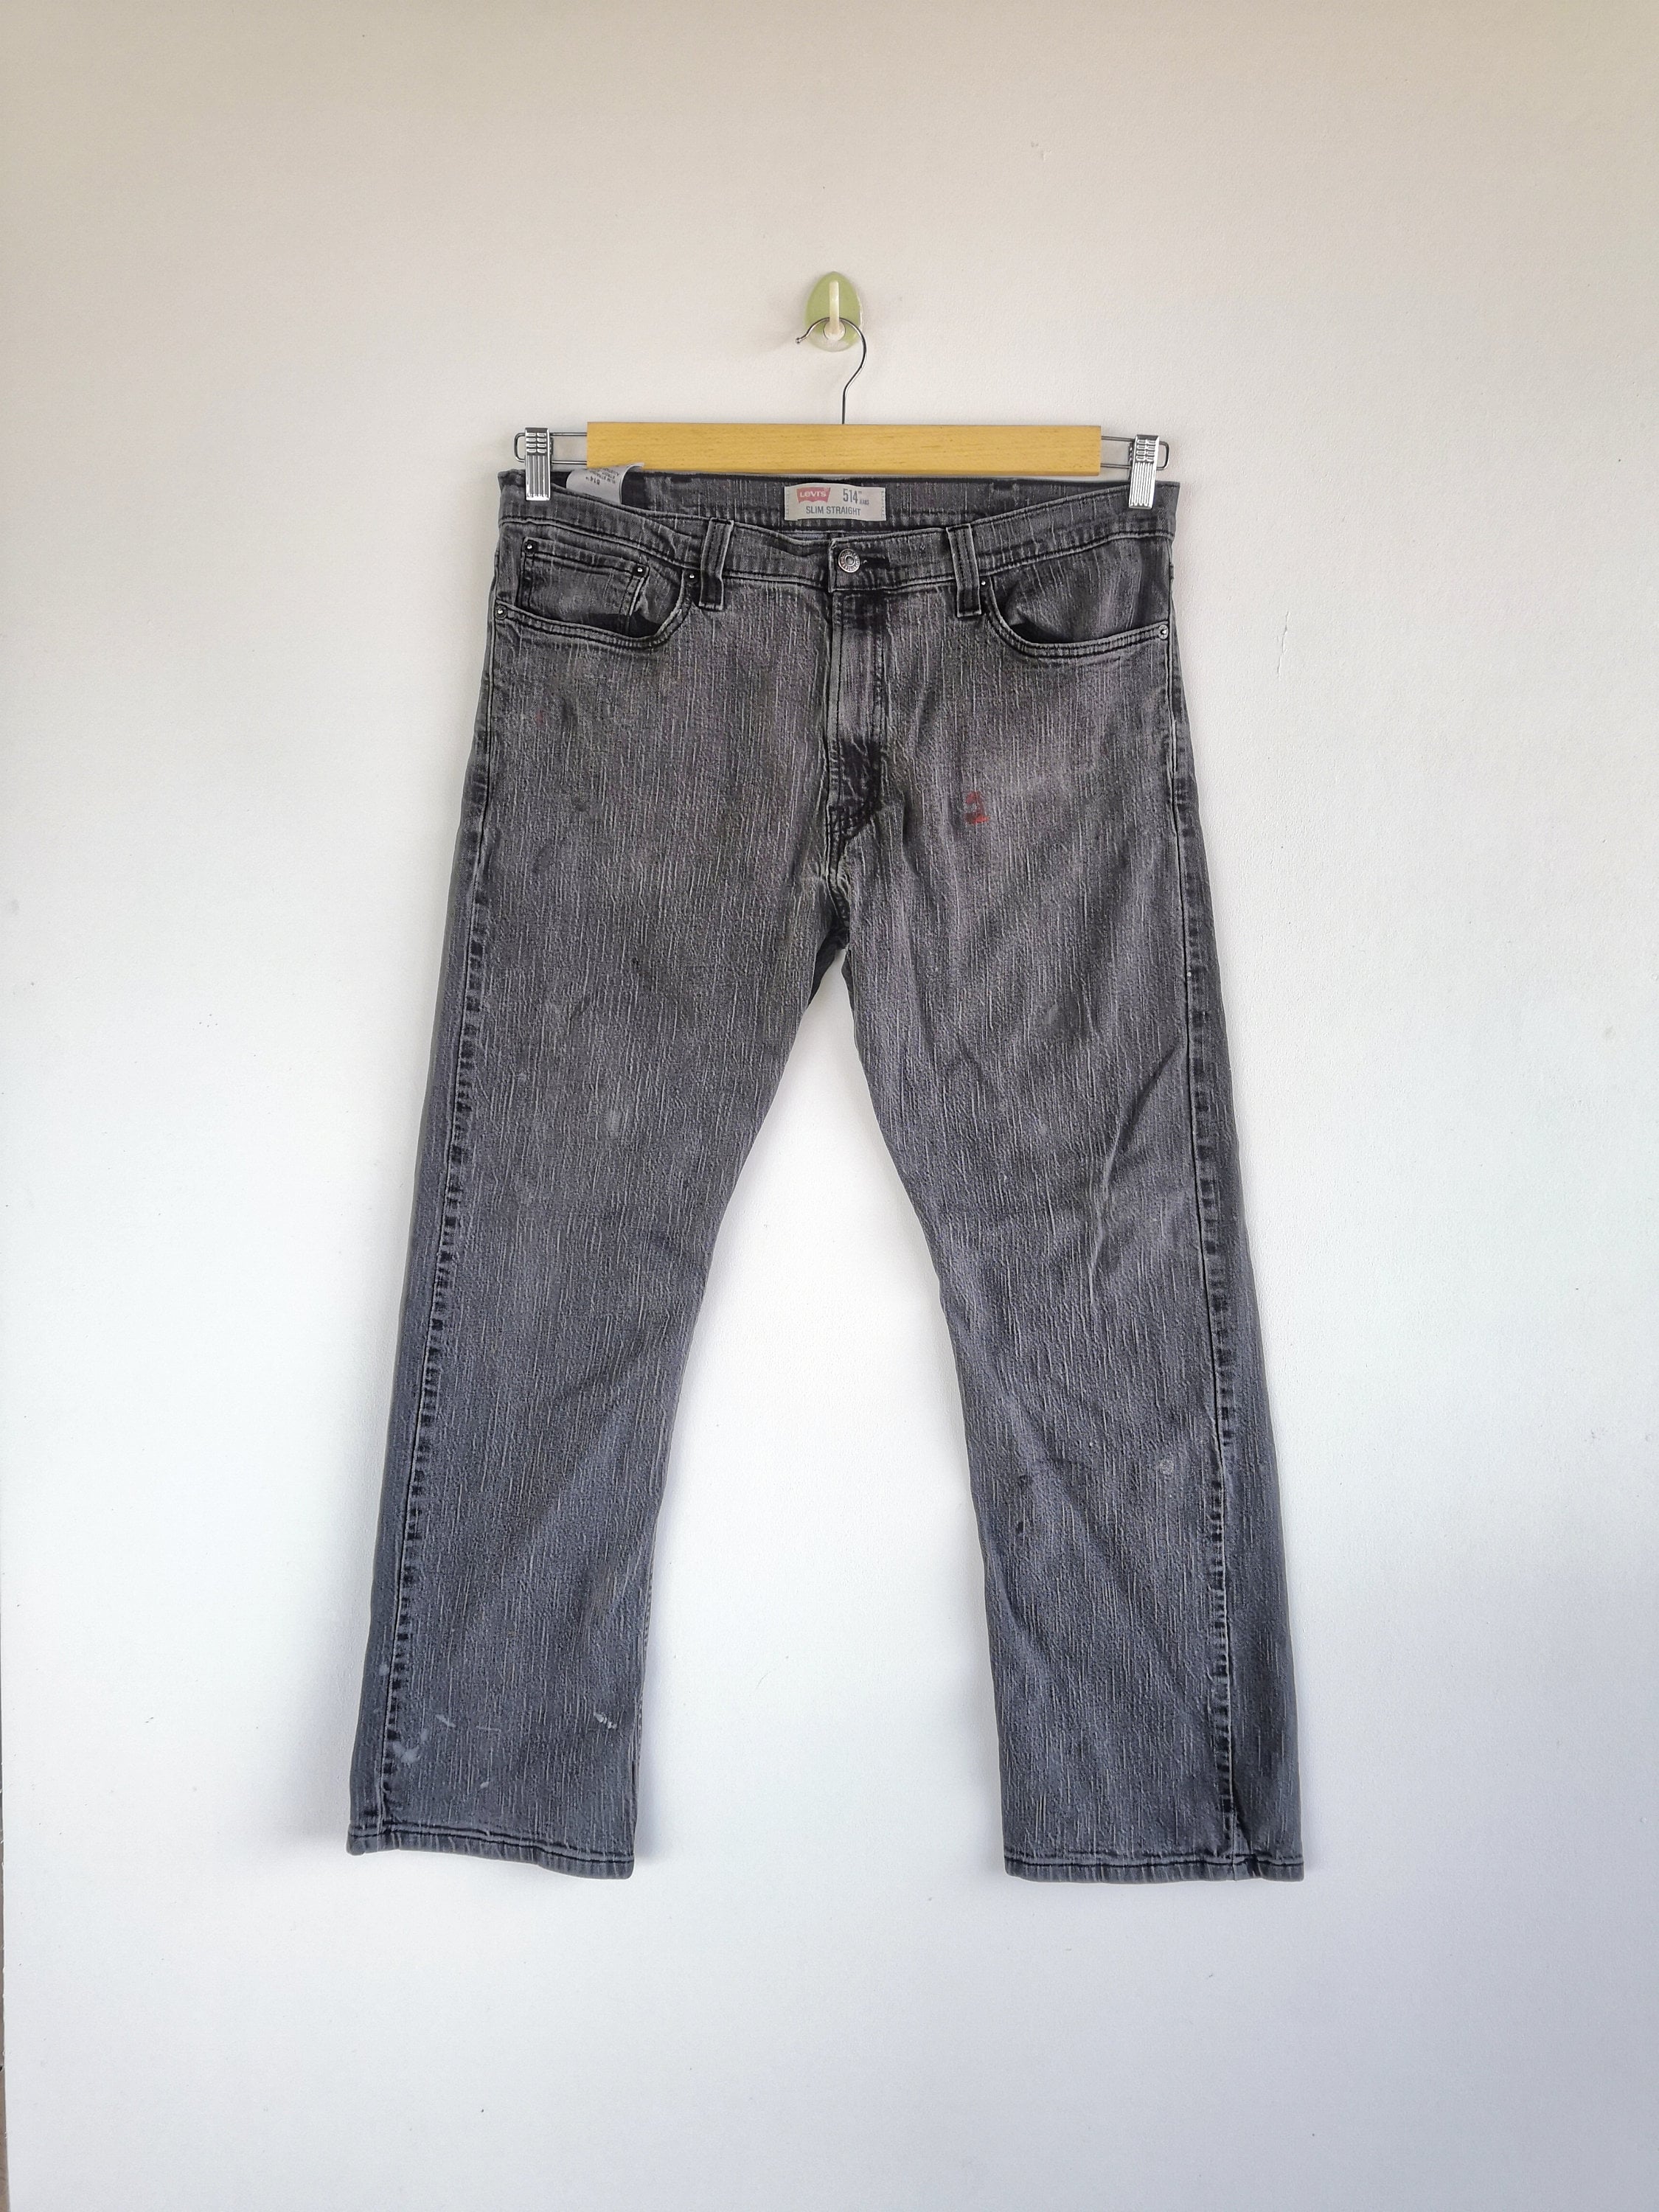 W36 Levis 514 Jeans Super Black Jeans Levi 514 Denim Womens - Etsy New  Zealand